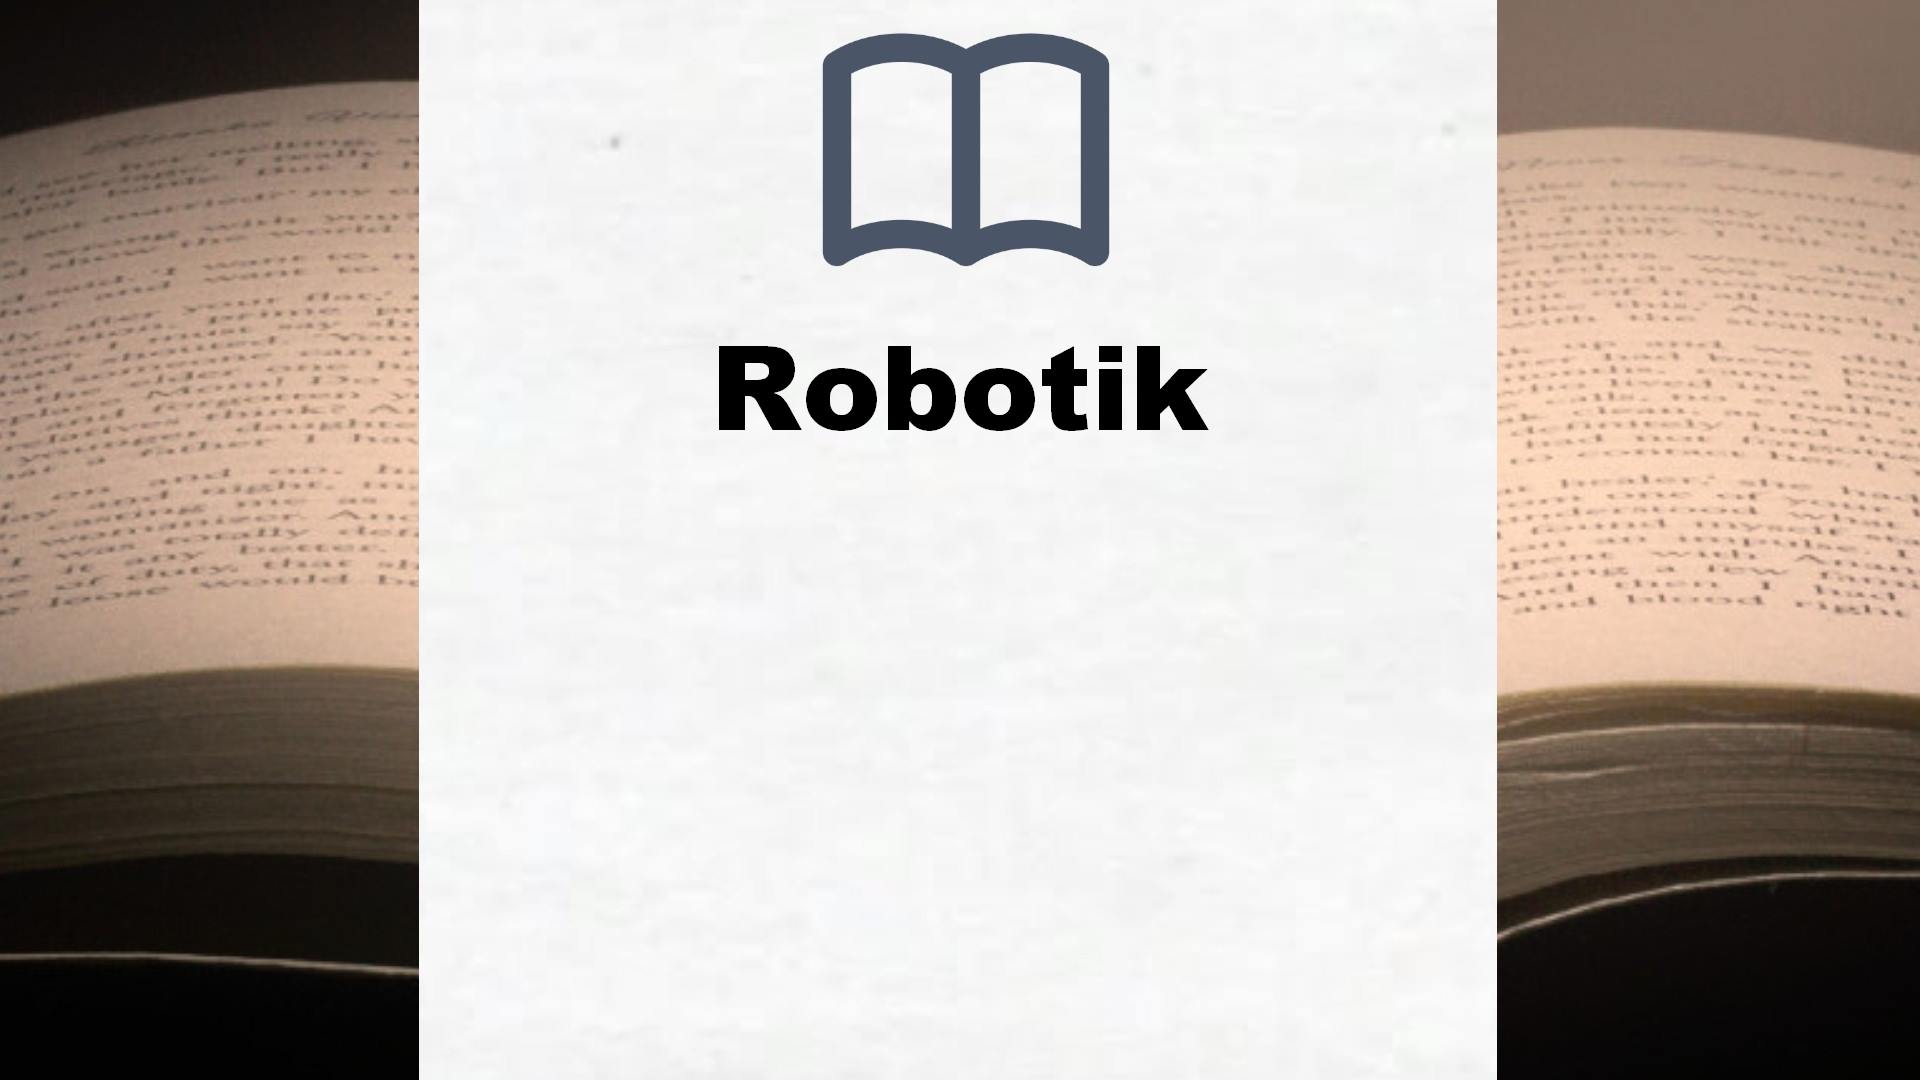 Bücher über Robotik